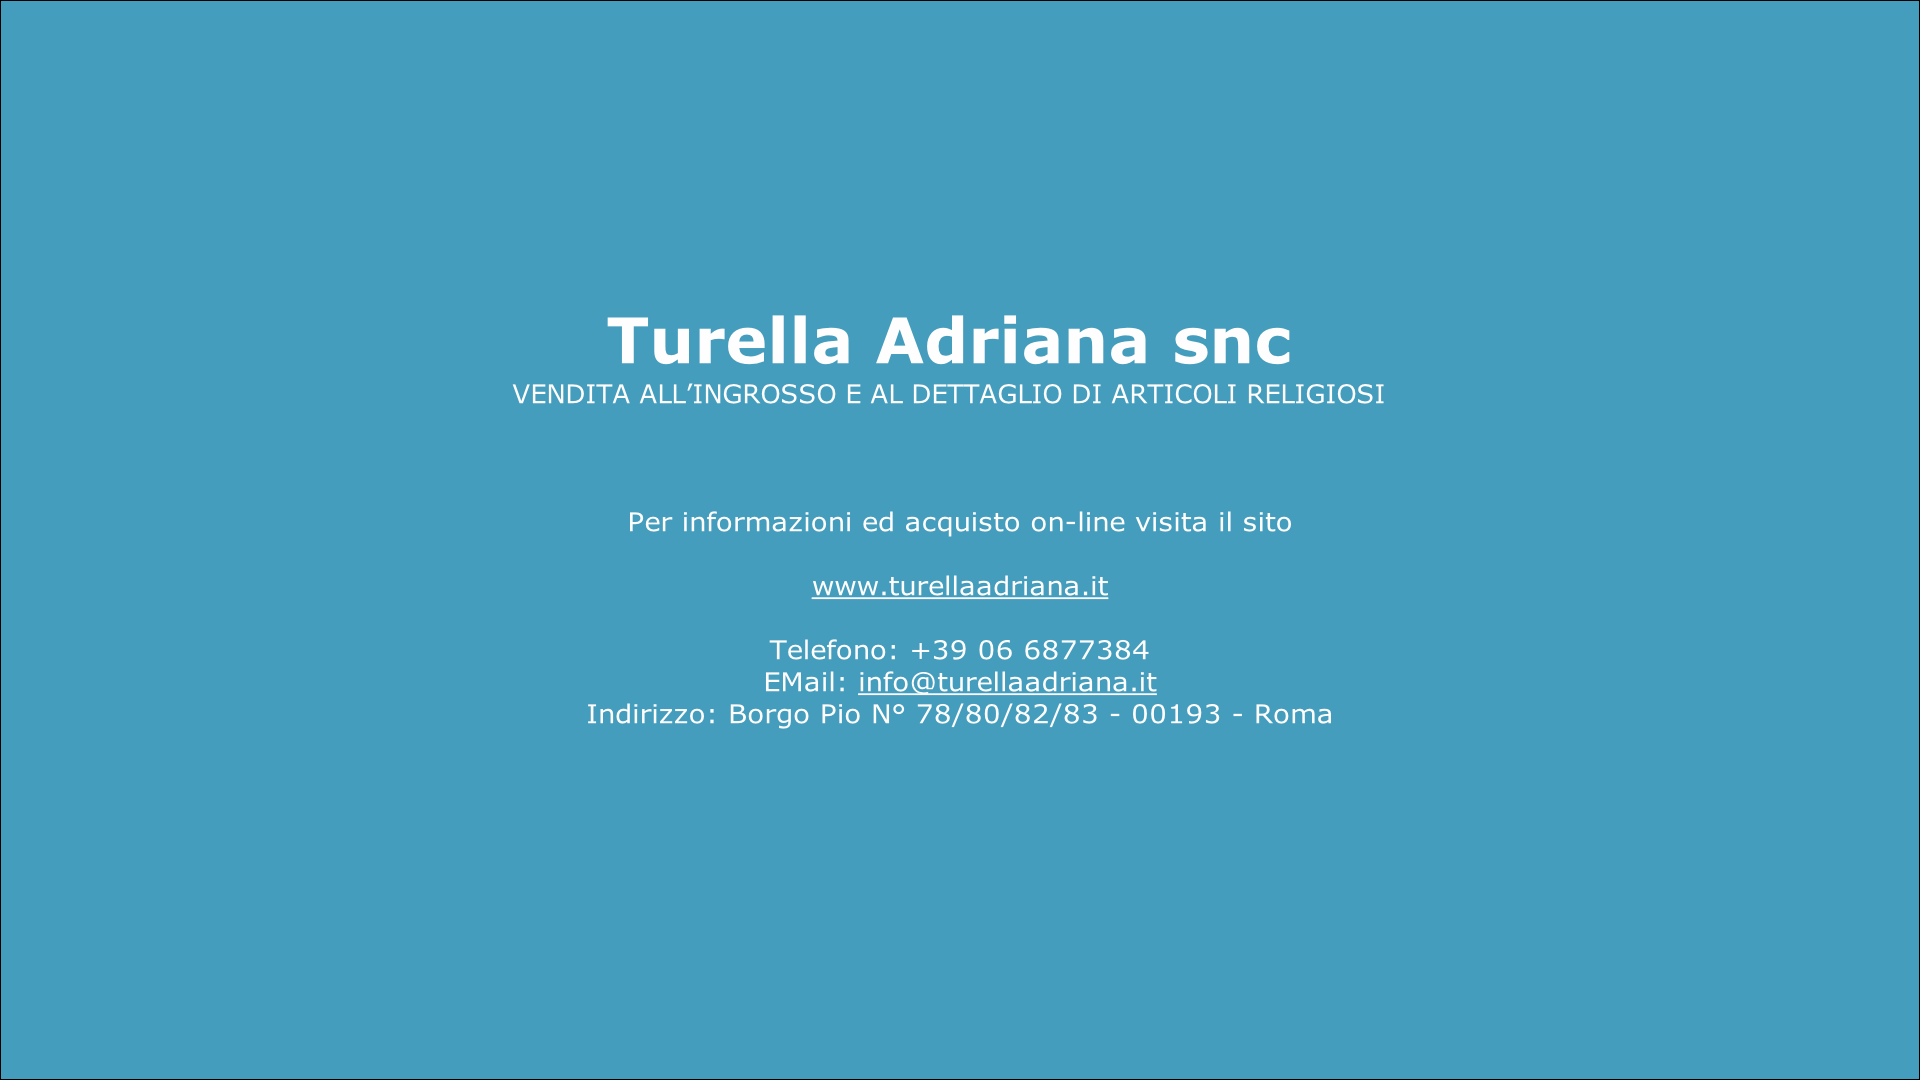 Per informazioni ed acquisto on-line visita il sito

www.turellaadriana.it

Telefono: +39 06 6877384
EMail: info@turellaadriana.it
Indirizzo: Borgo Pio N° 78/80/82/83 - 00193 - Roma
